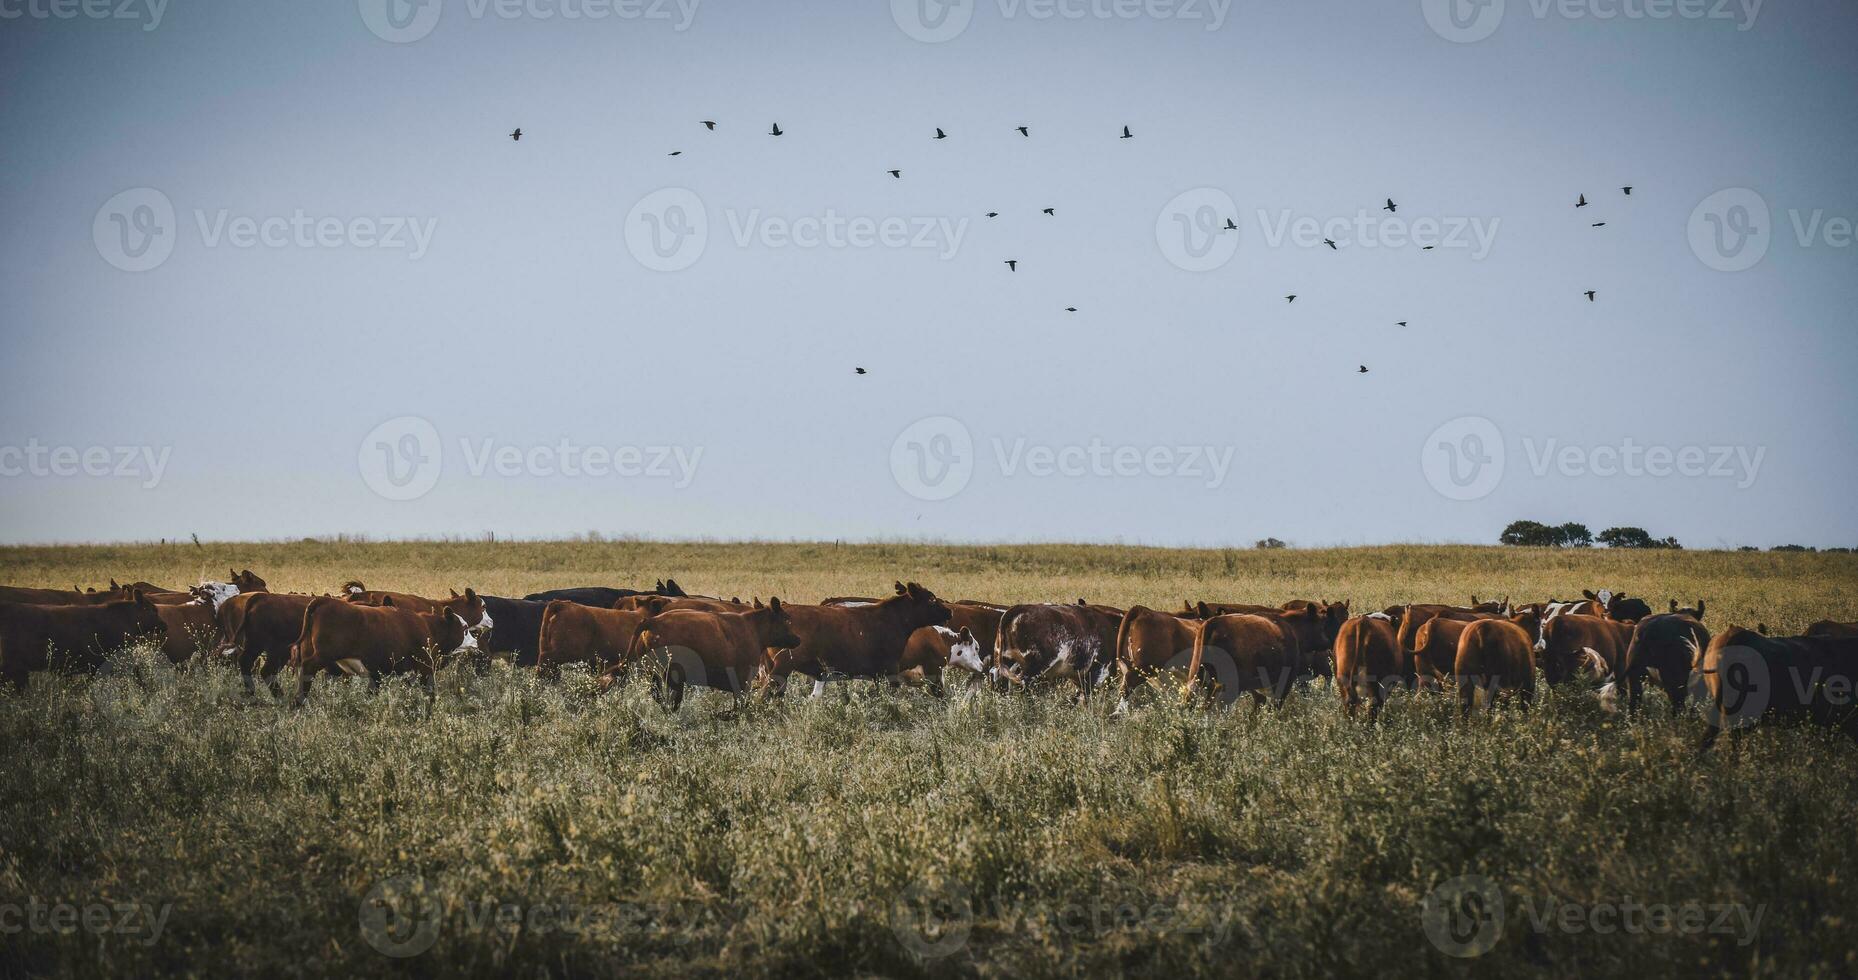 koeien verheven met natuurlijk gras, Argentijns vlees productie foto